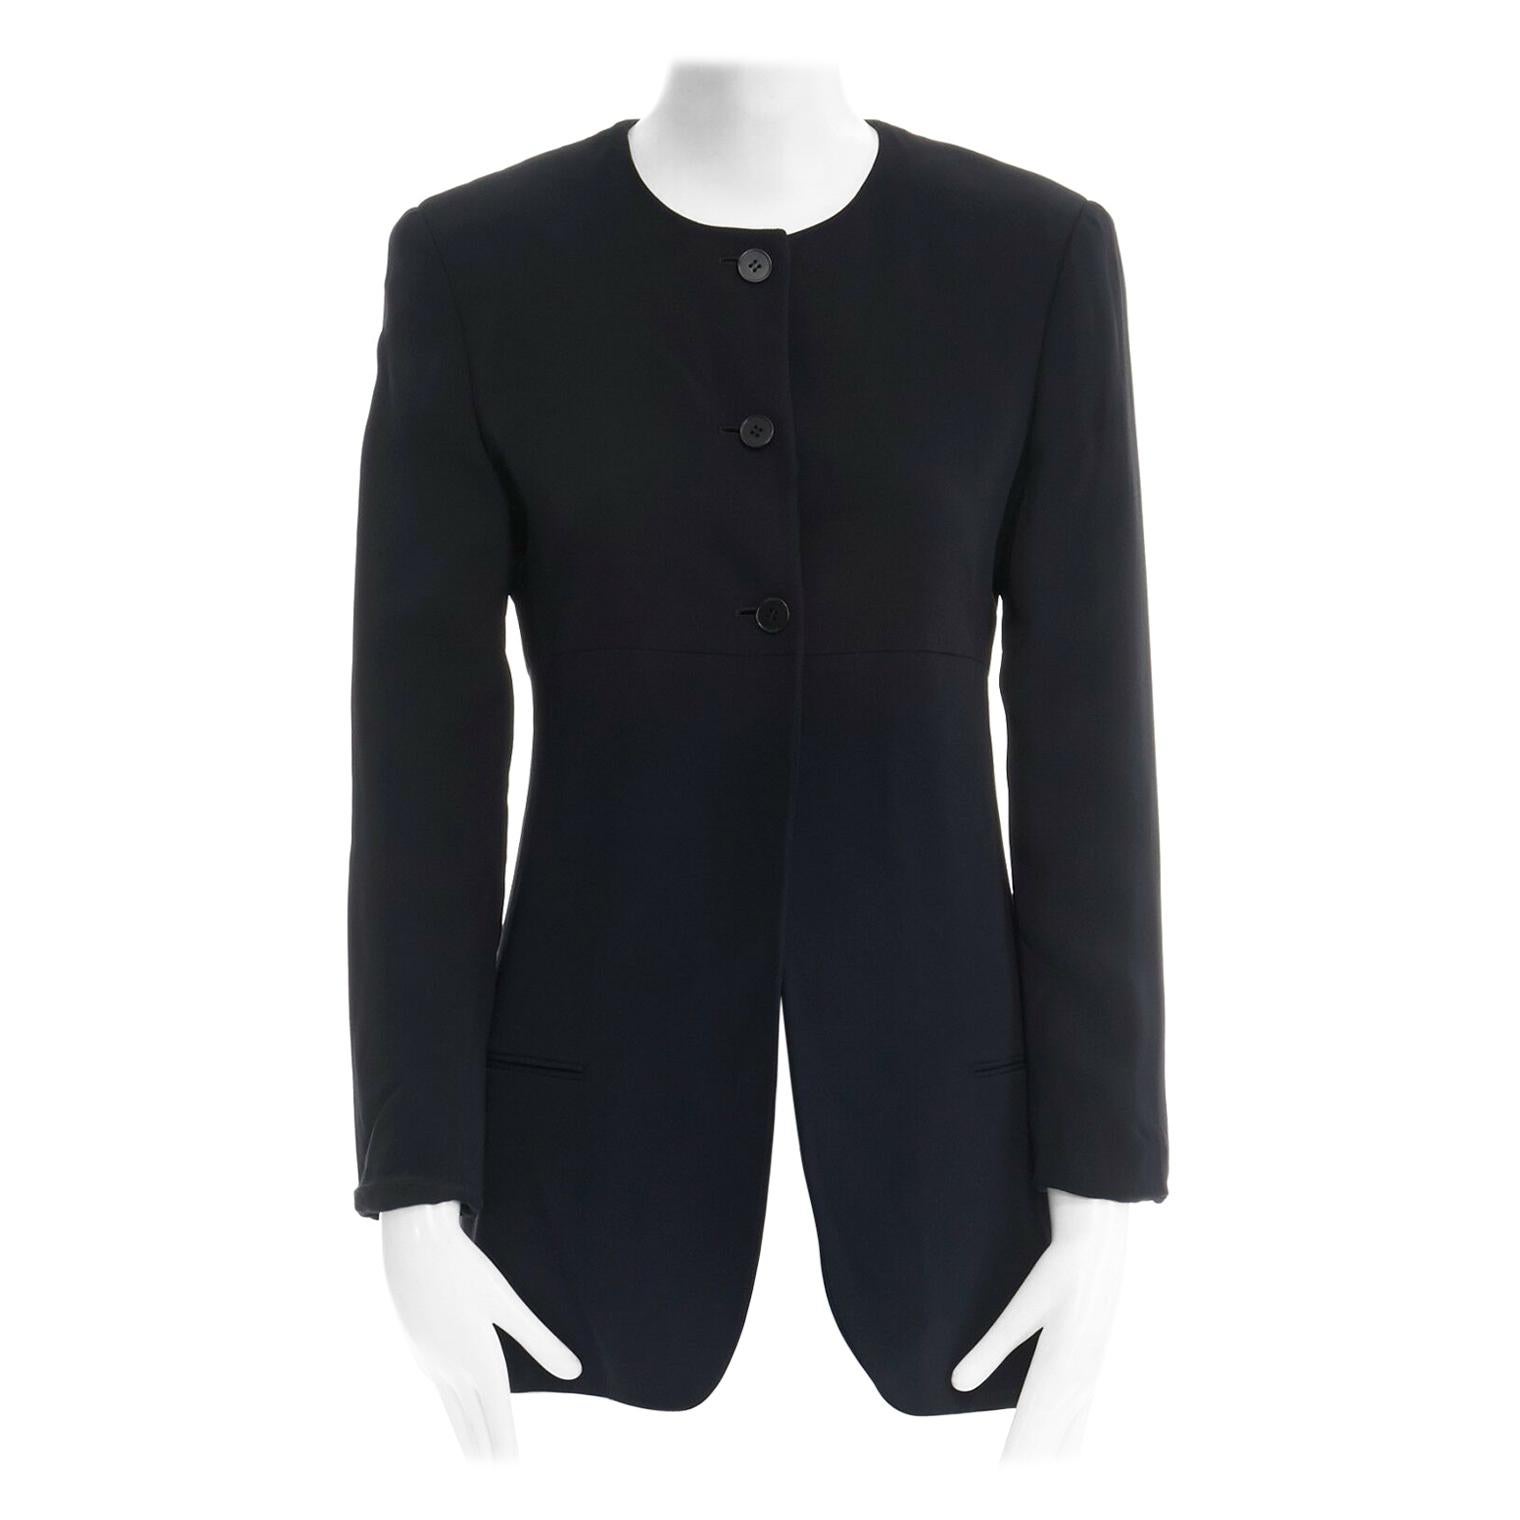 CALVIN KLEIN COLLECTION 100% silk black collarless minimal blazer jacket US2 XS